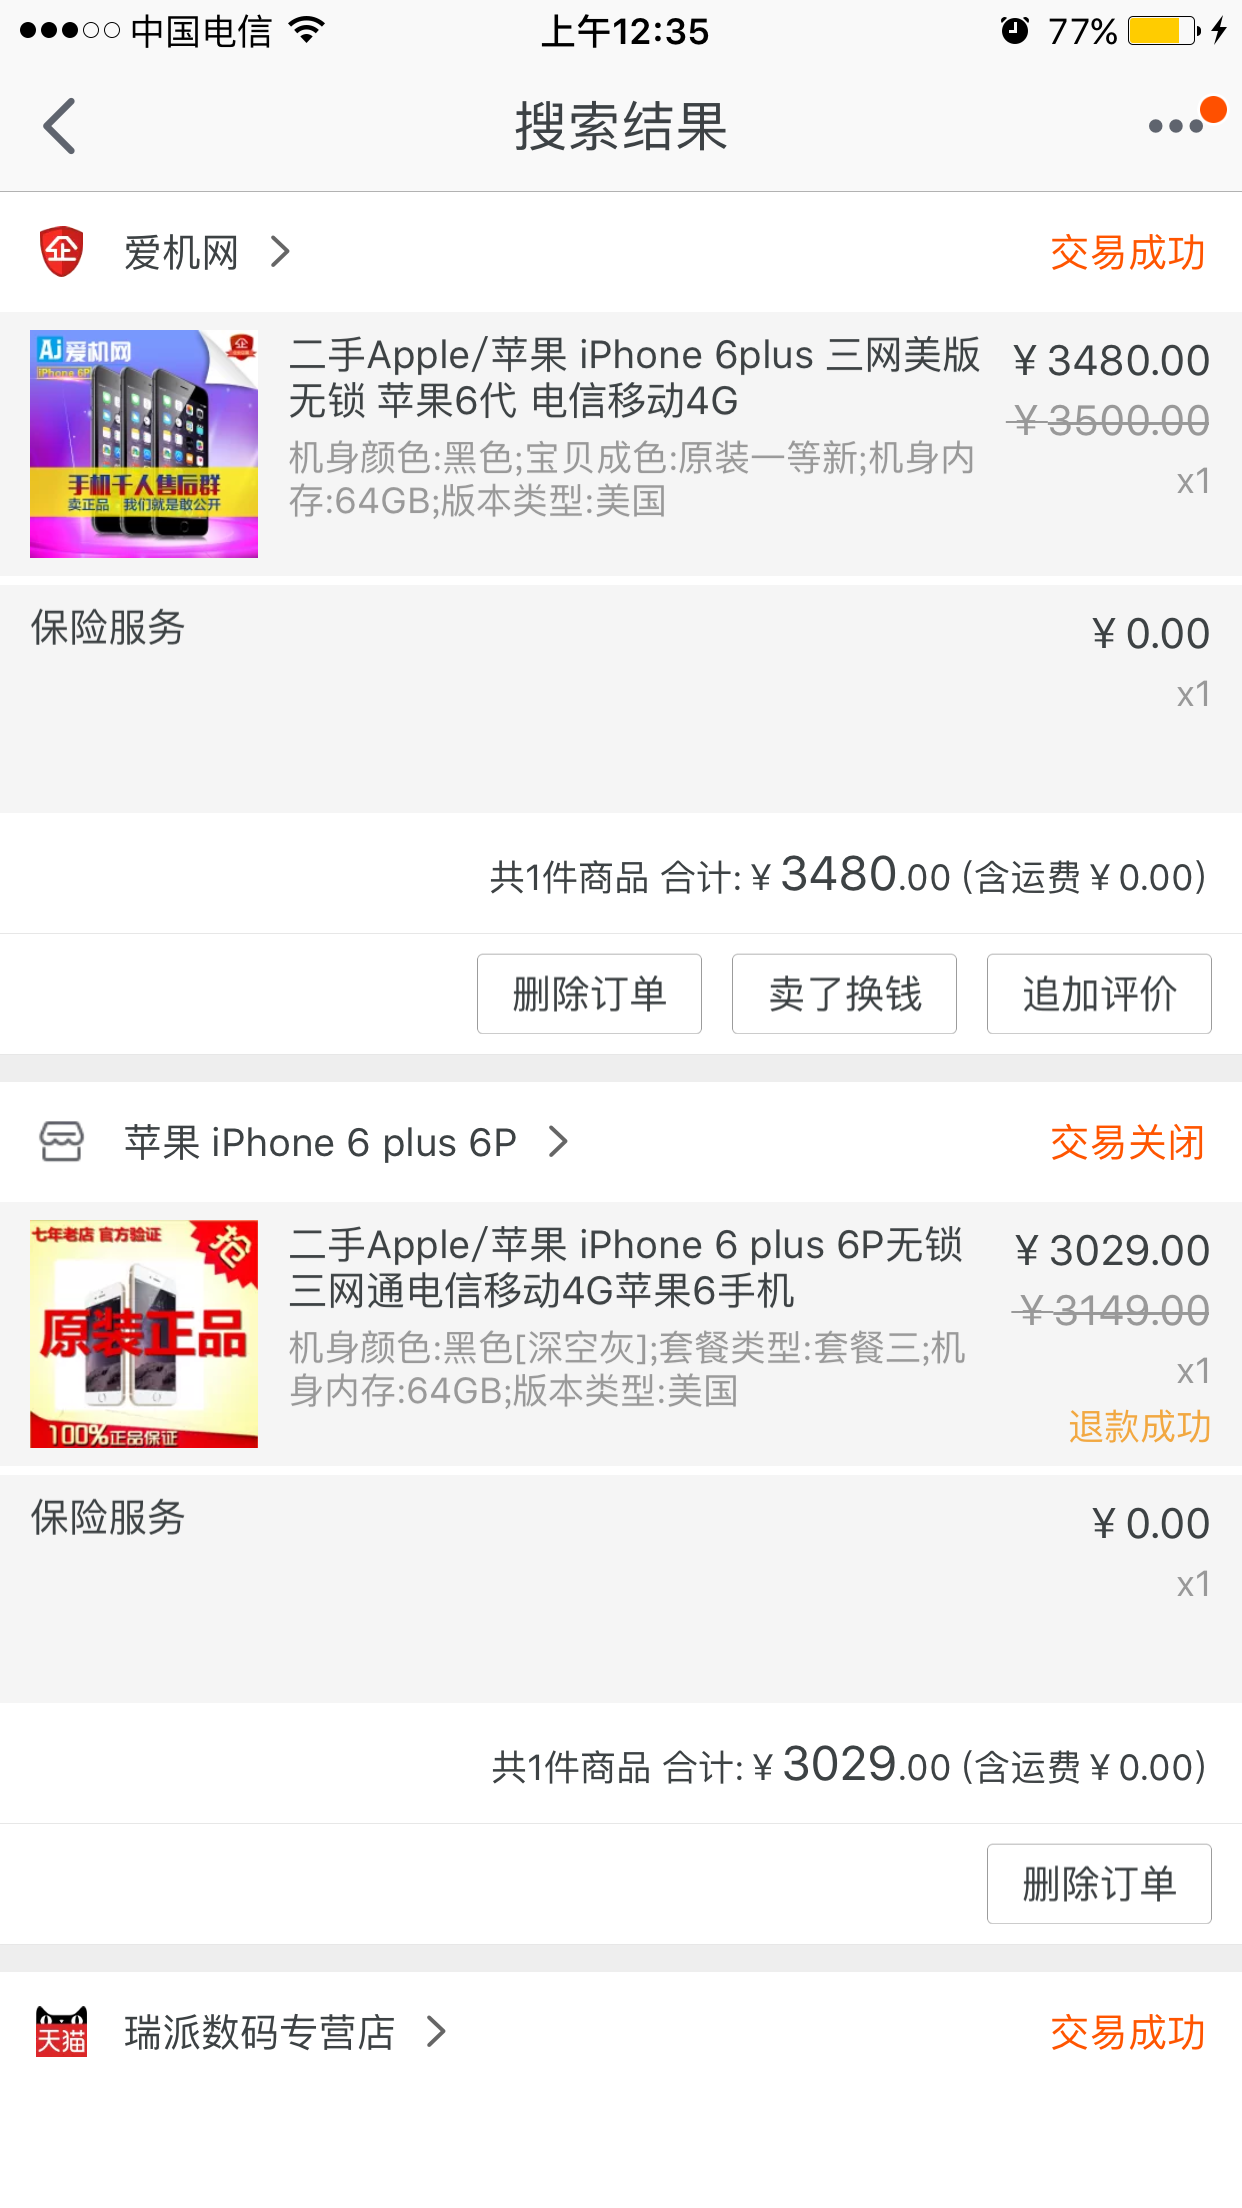 淘宝上买 iPhone 5s 靠谱吗?